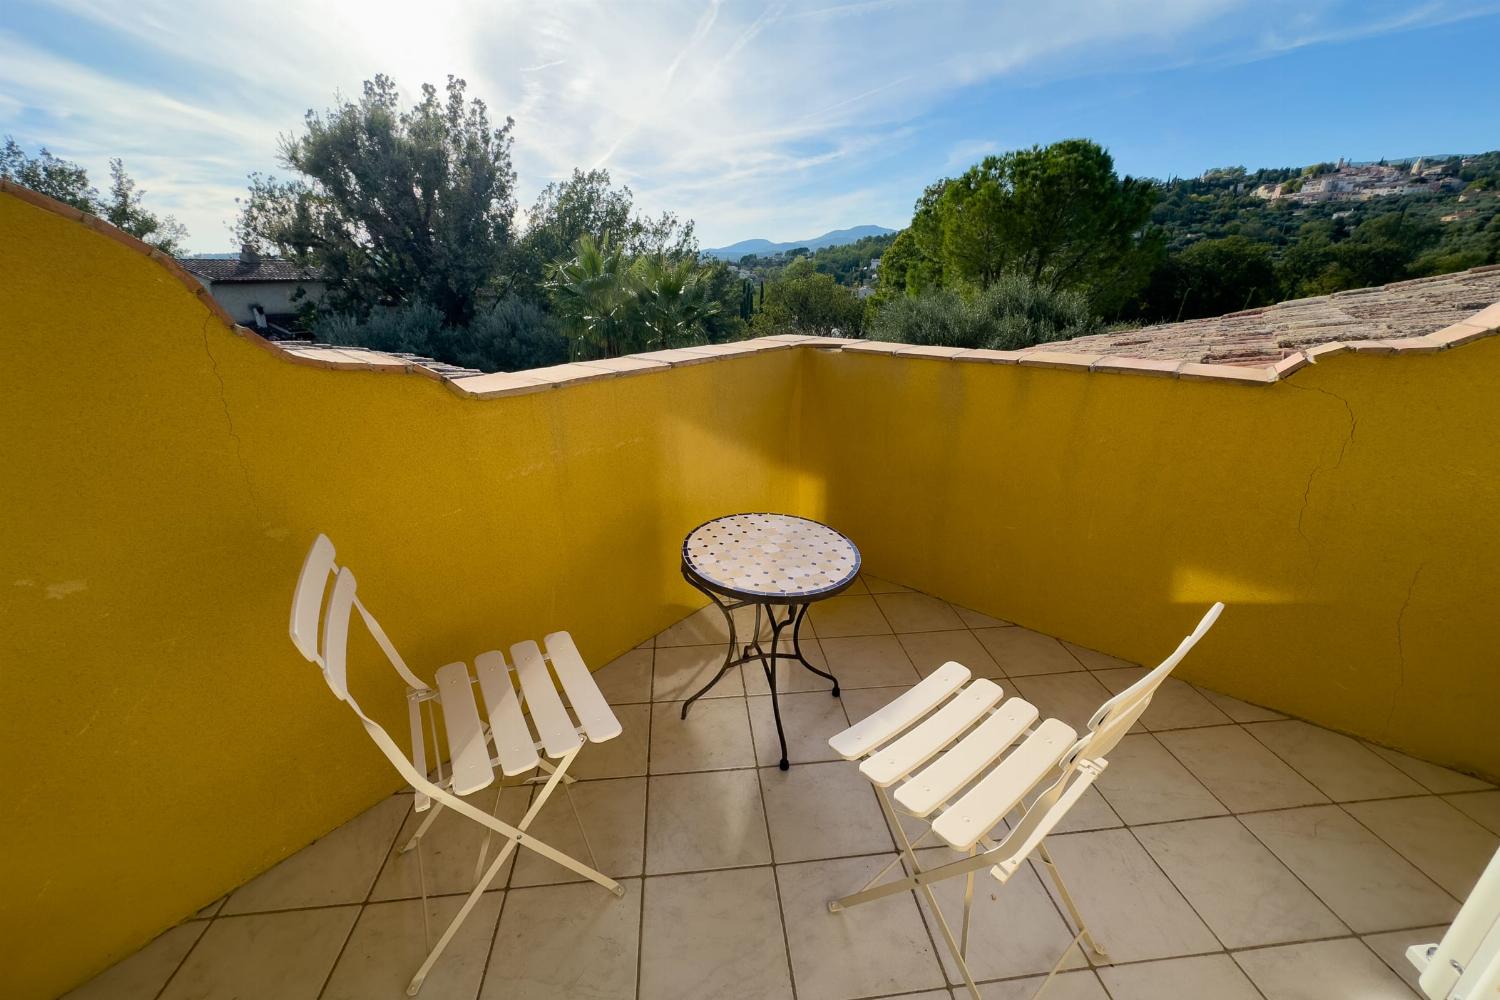 Bedroom balcony terrace | Holiday villa in Provence